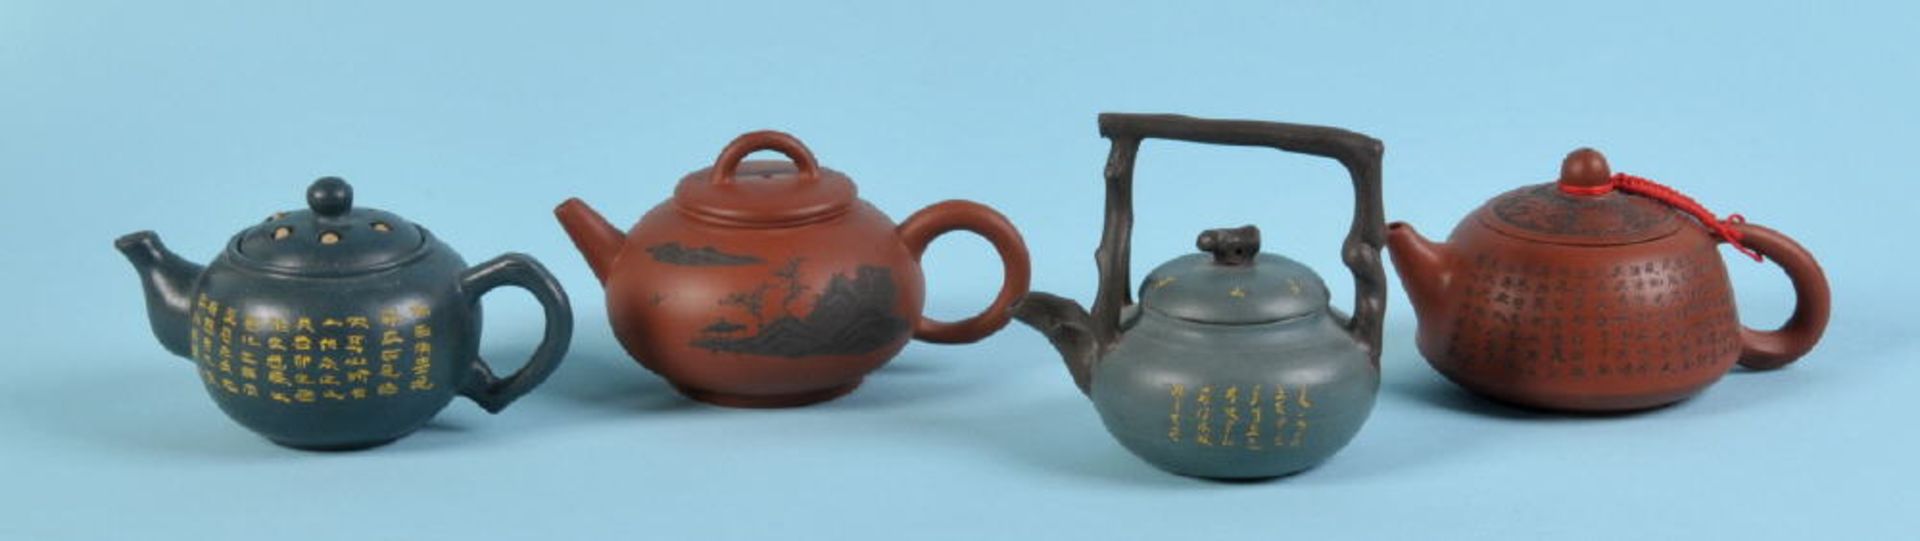 Teekännchen, 4 Stückbrauner Yixing-Ton, 2 mit grüner Glasur, versch. Formen u. geritzte Dekors mit